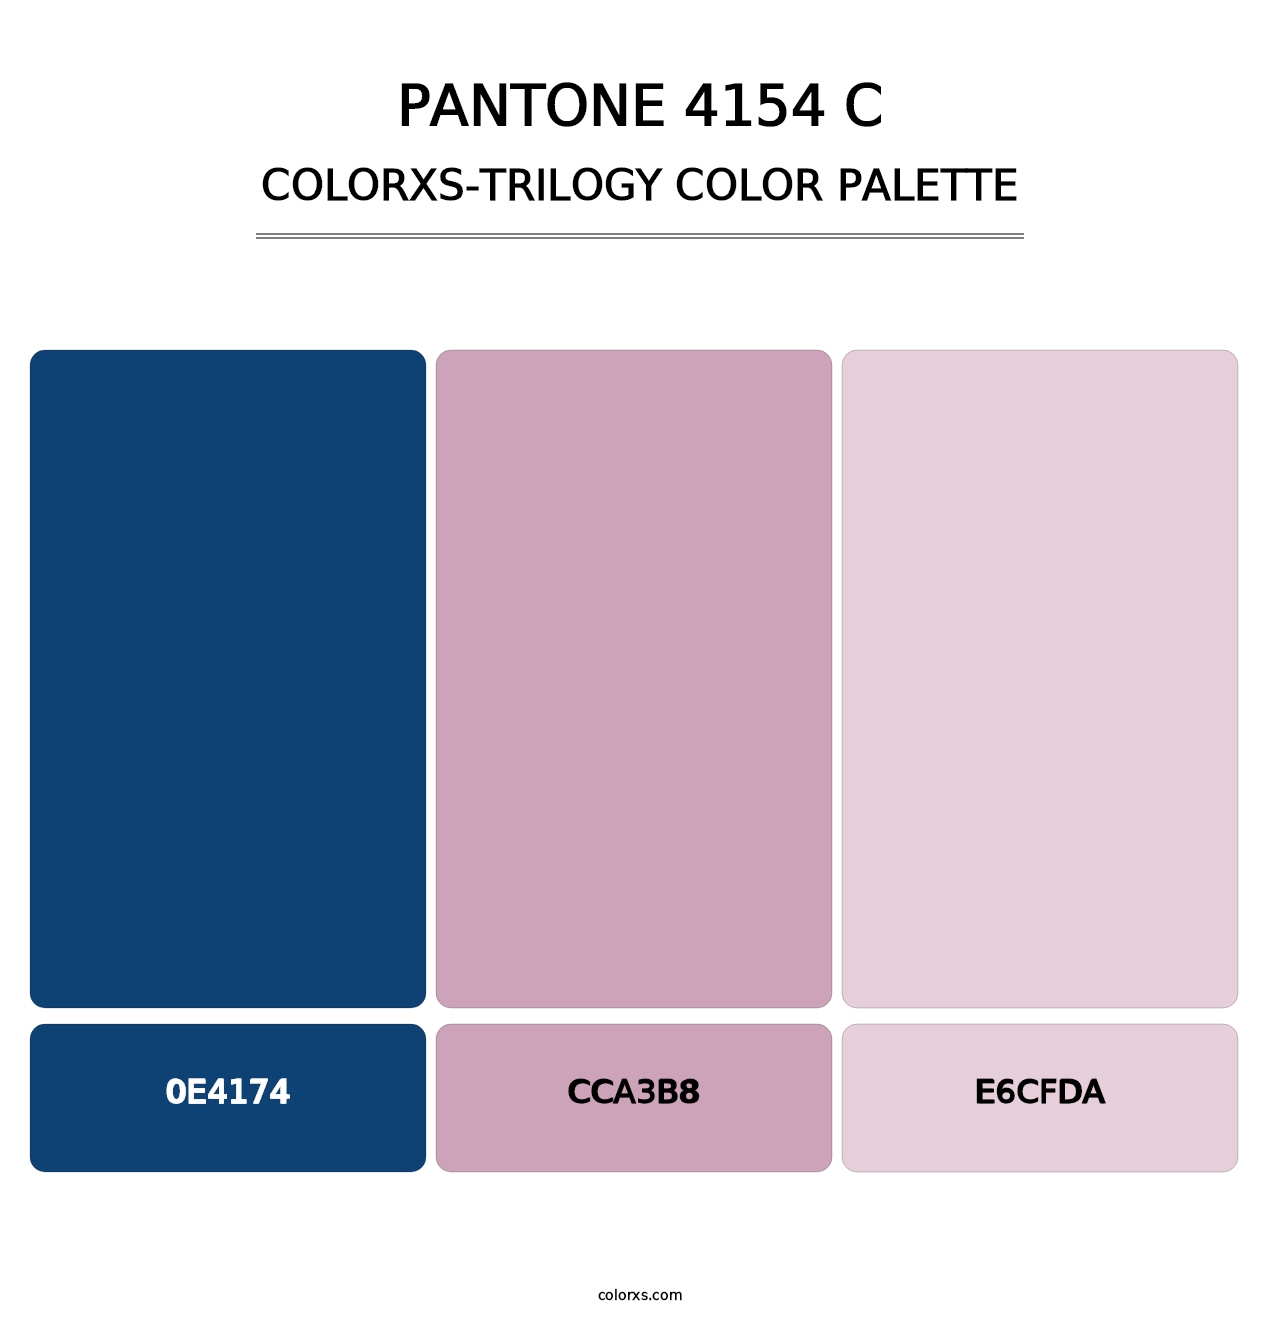 PANTONE 4154 C - Colorxs Trilogy Palette